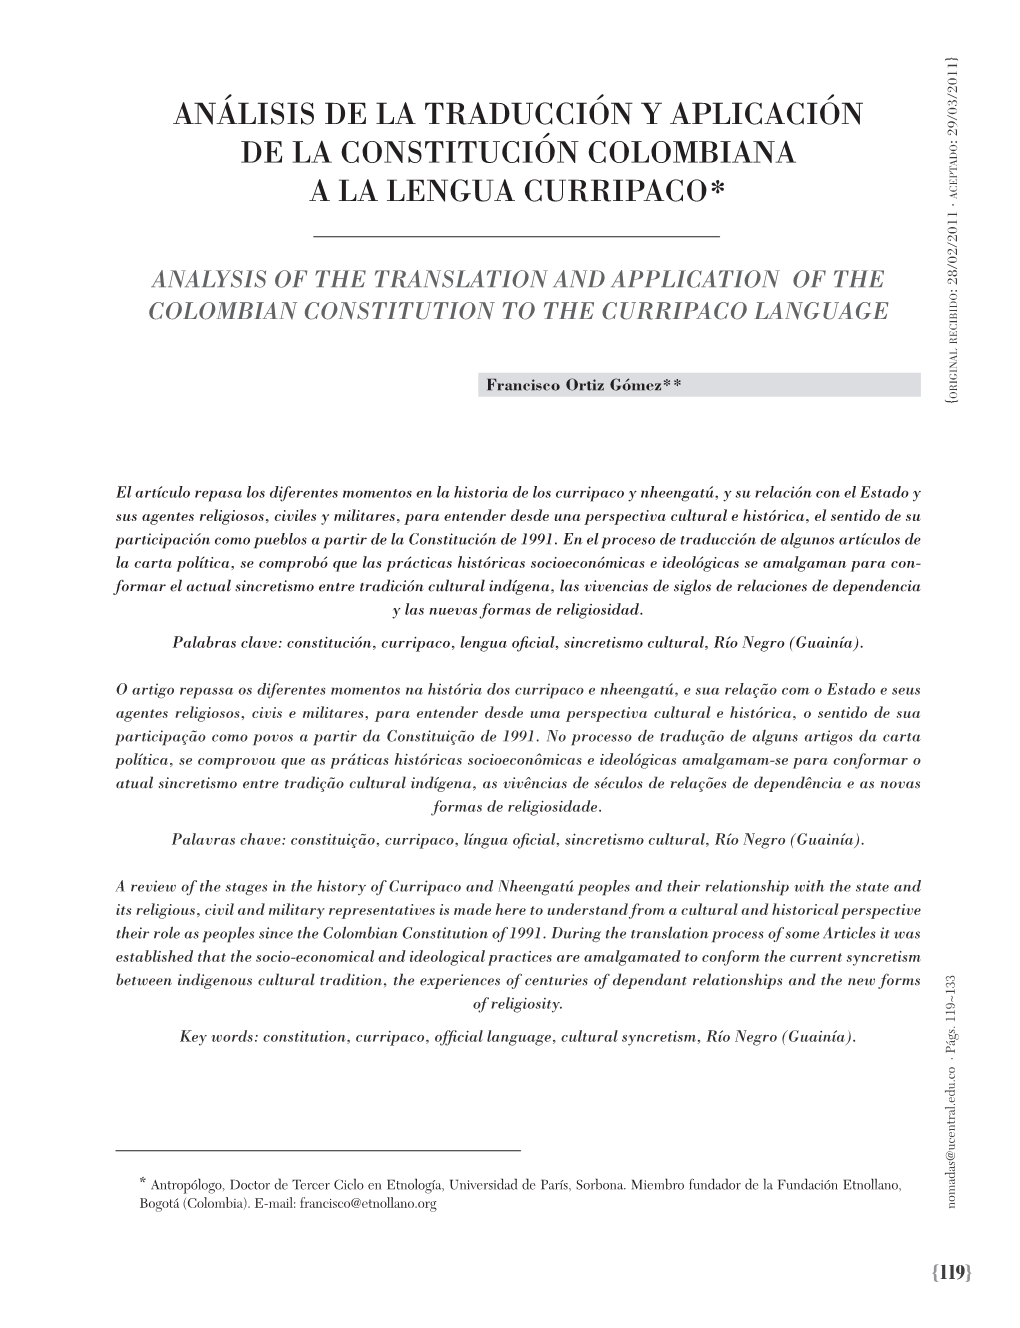 Análisis De La Traducción Y Aplicación De La Constitución Colombiana a La Lengua Curripaco